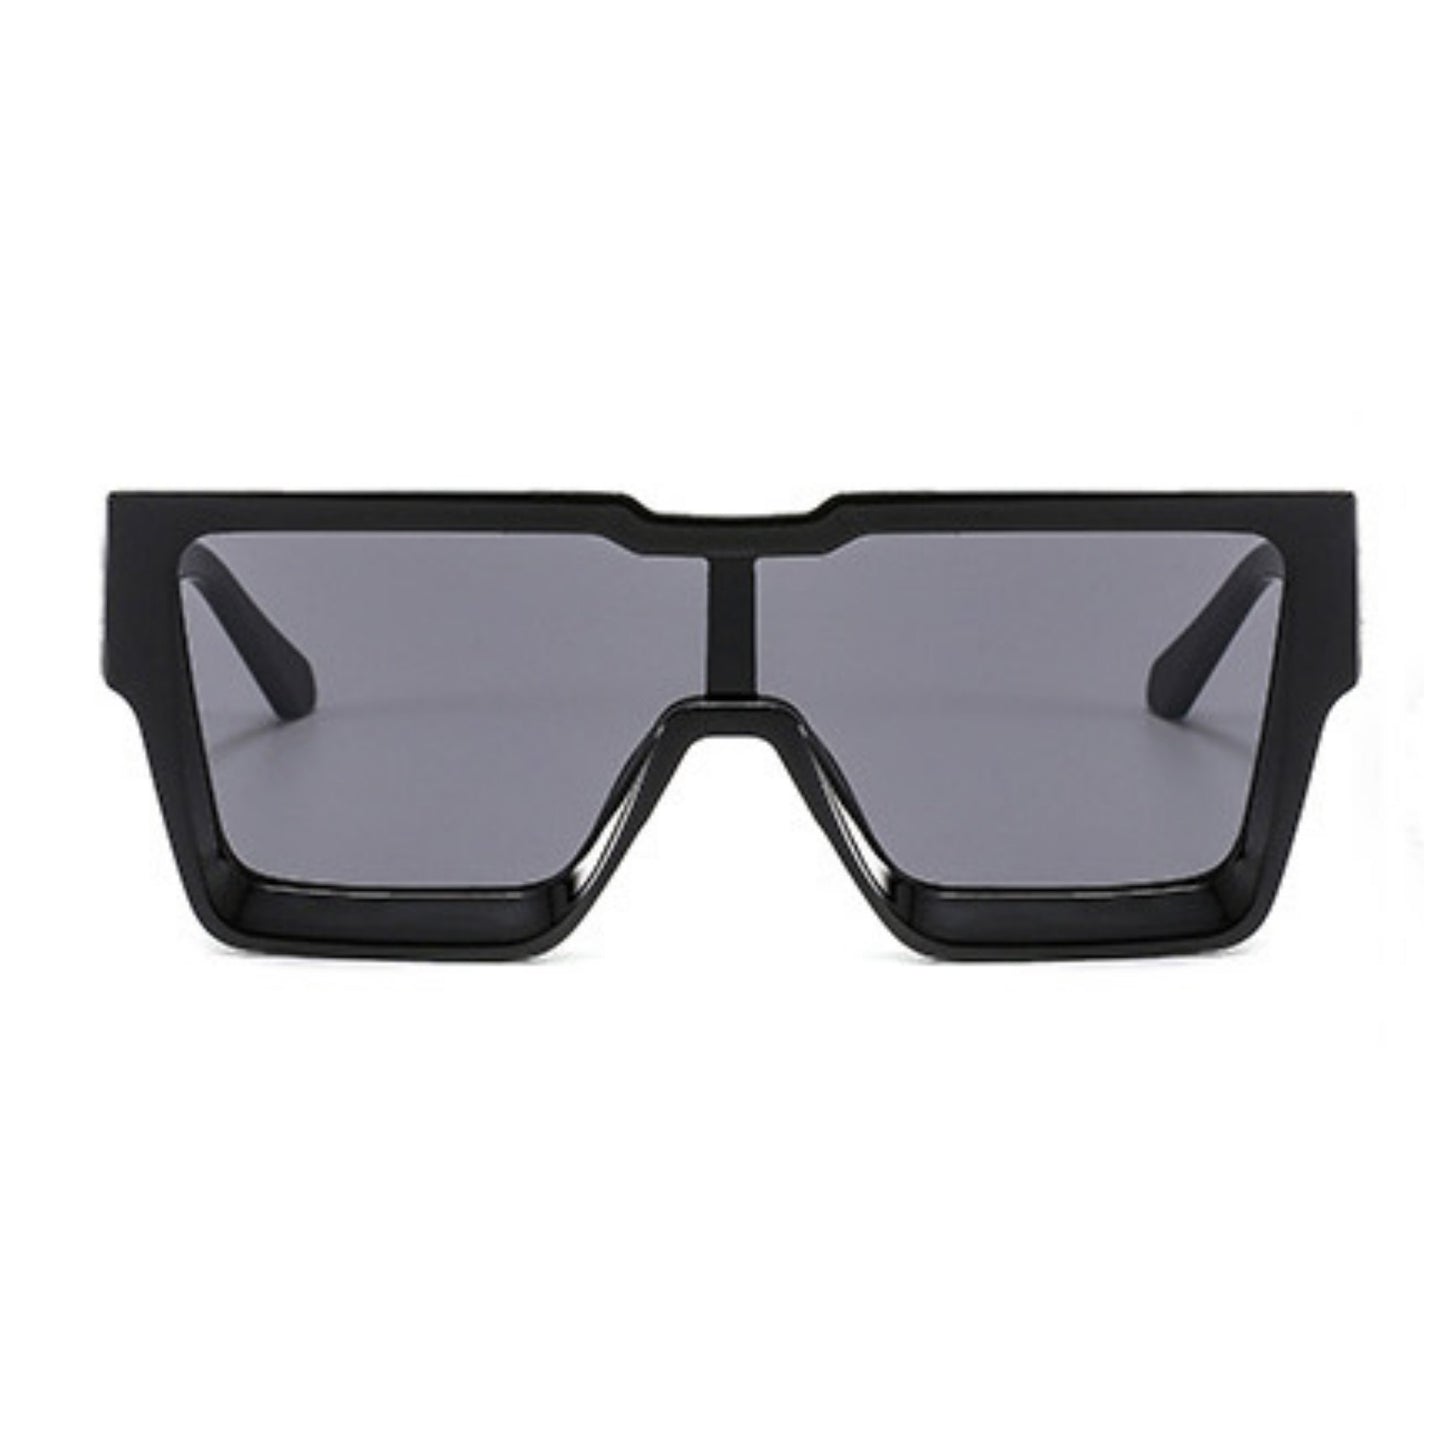 Γυαλιά ηλίου Toronto (Μάσκα) από την Exposure Sunglasses με προστασία UV400 με μαύρο σκελετό και μαύρο φακό.